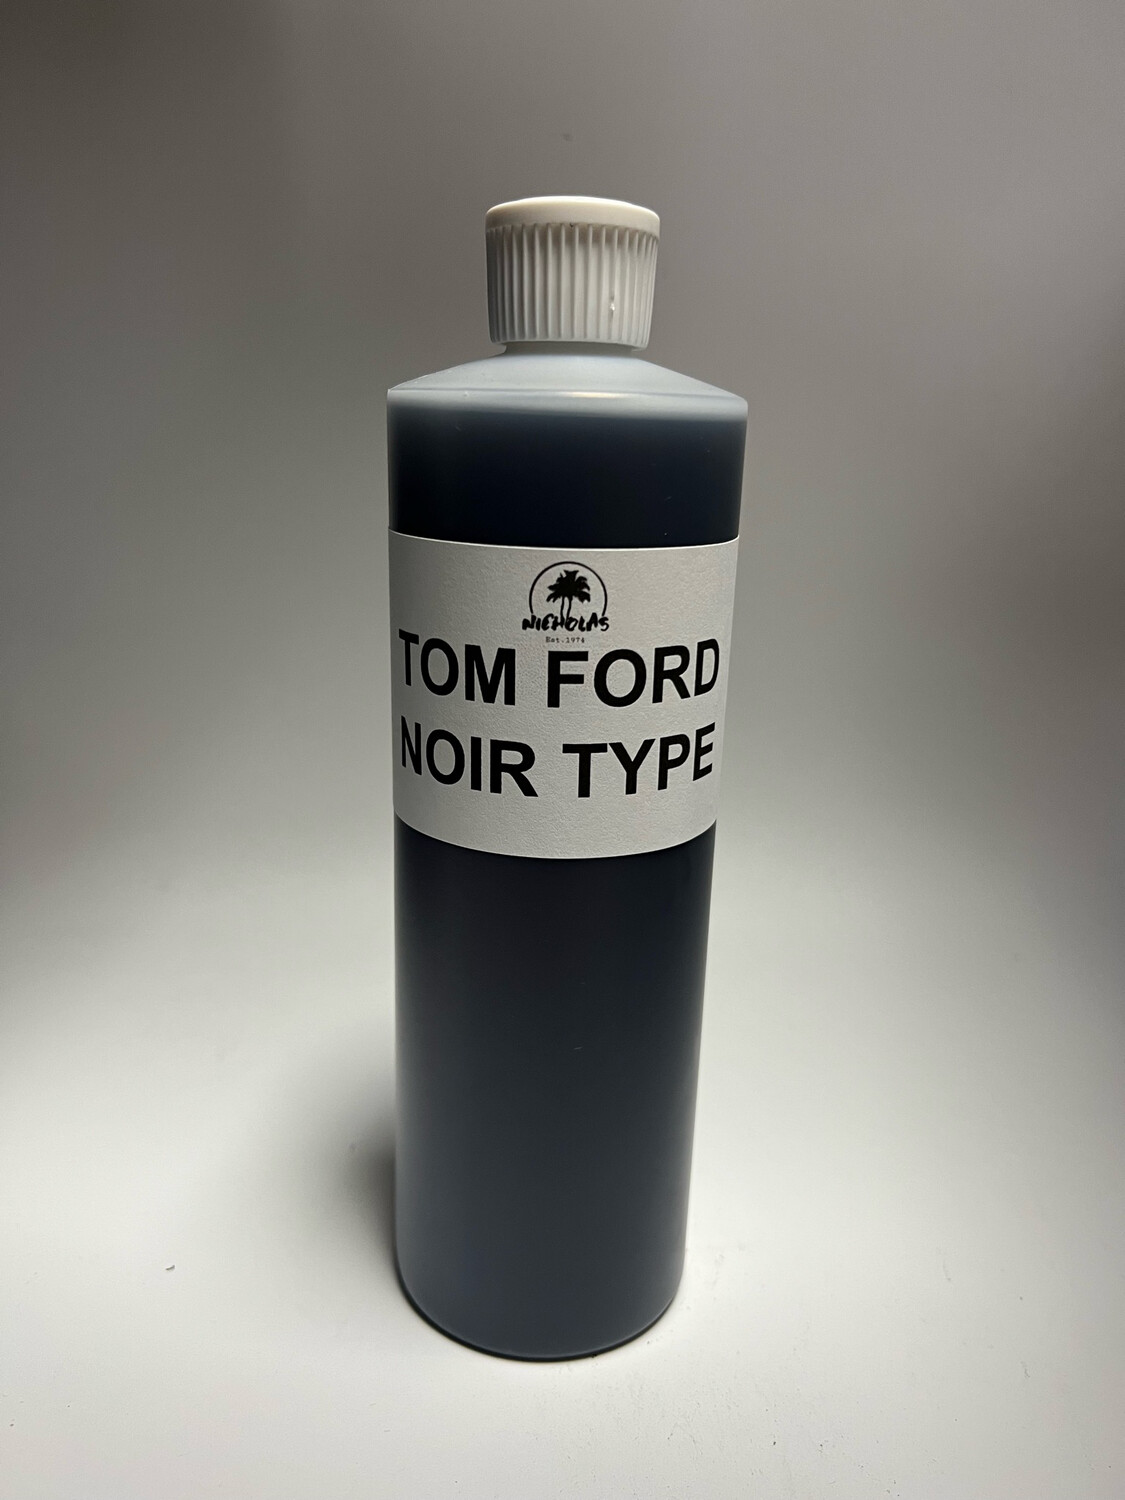 Tom Ford Noir Type